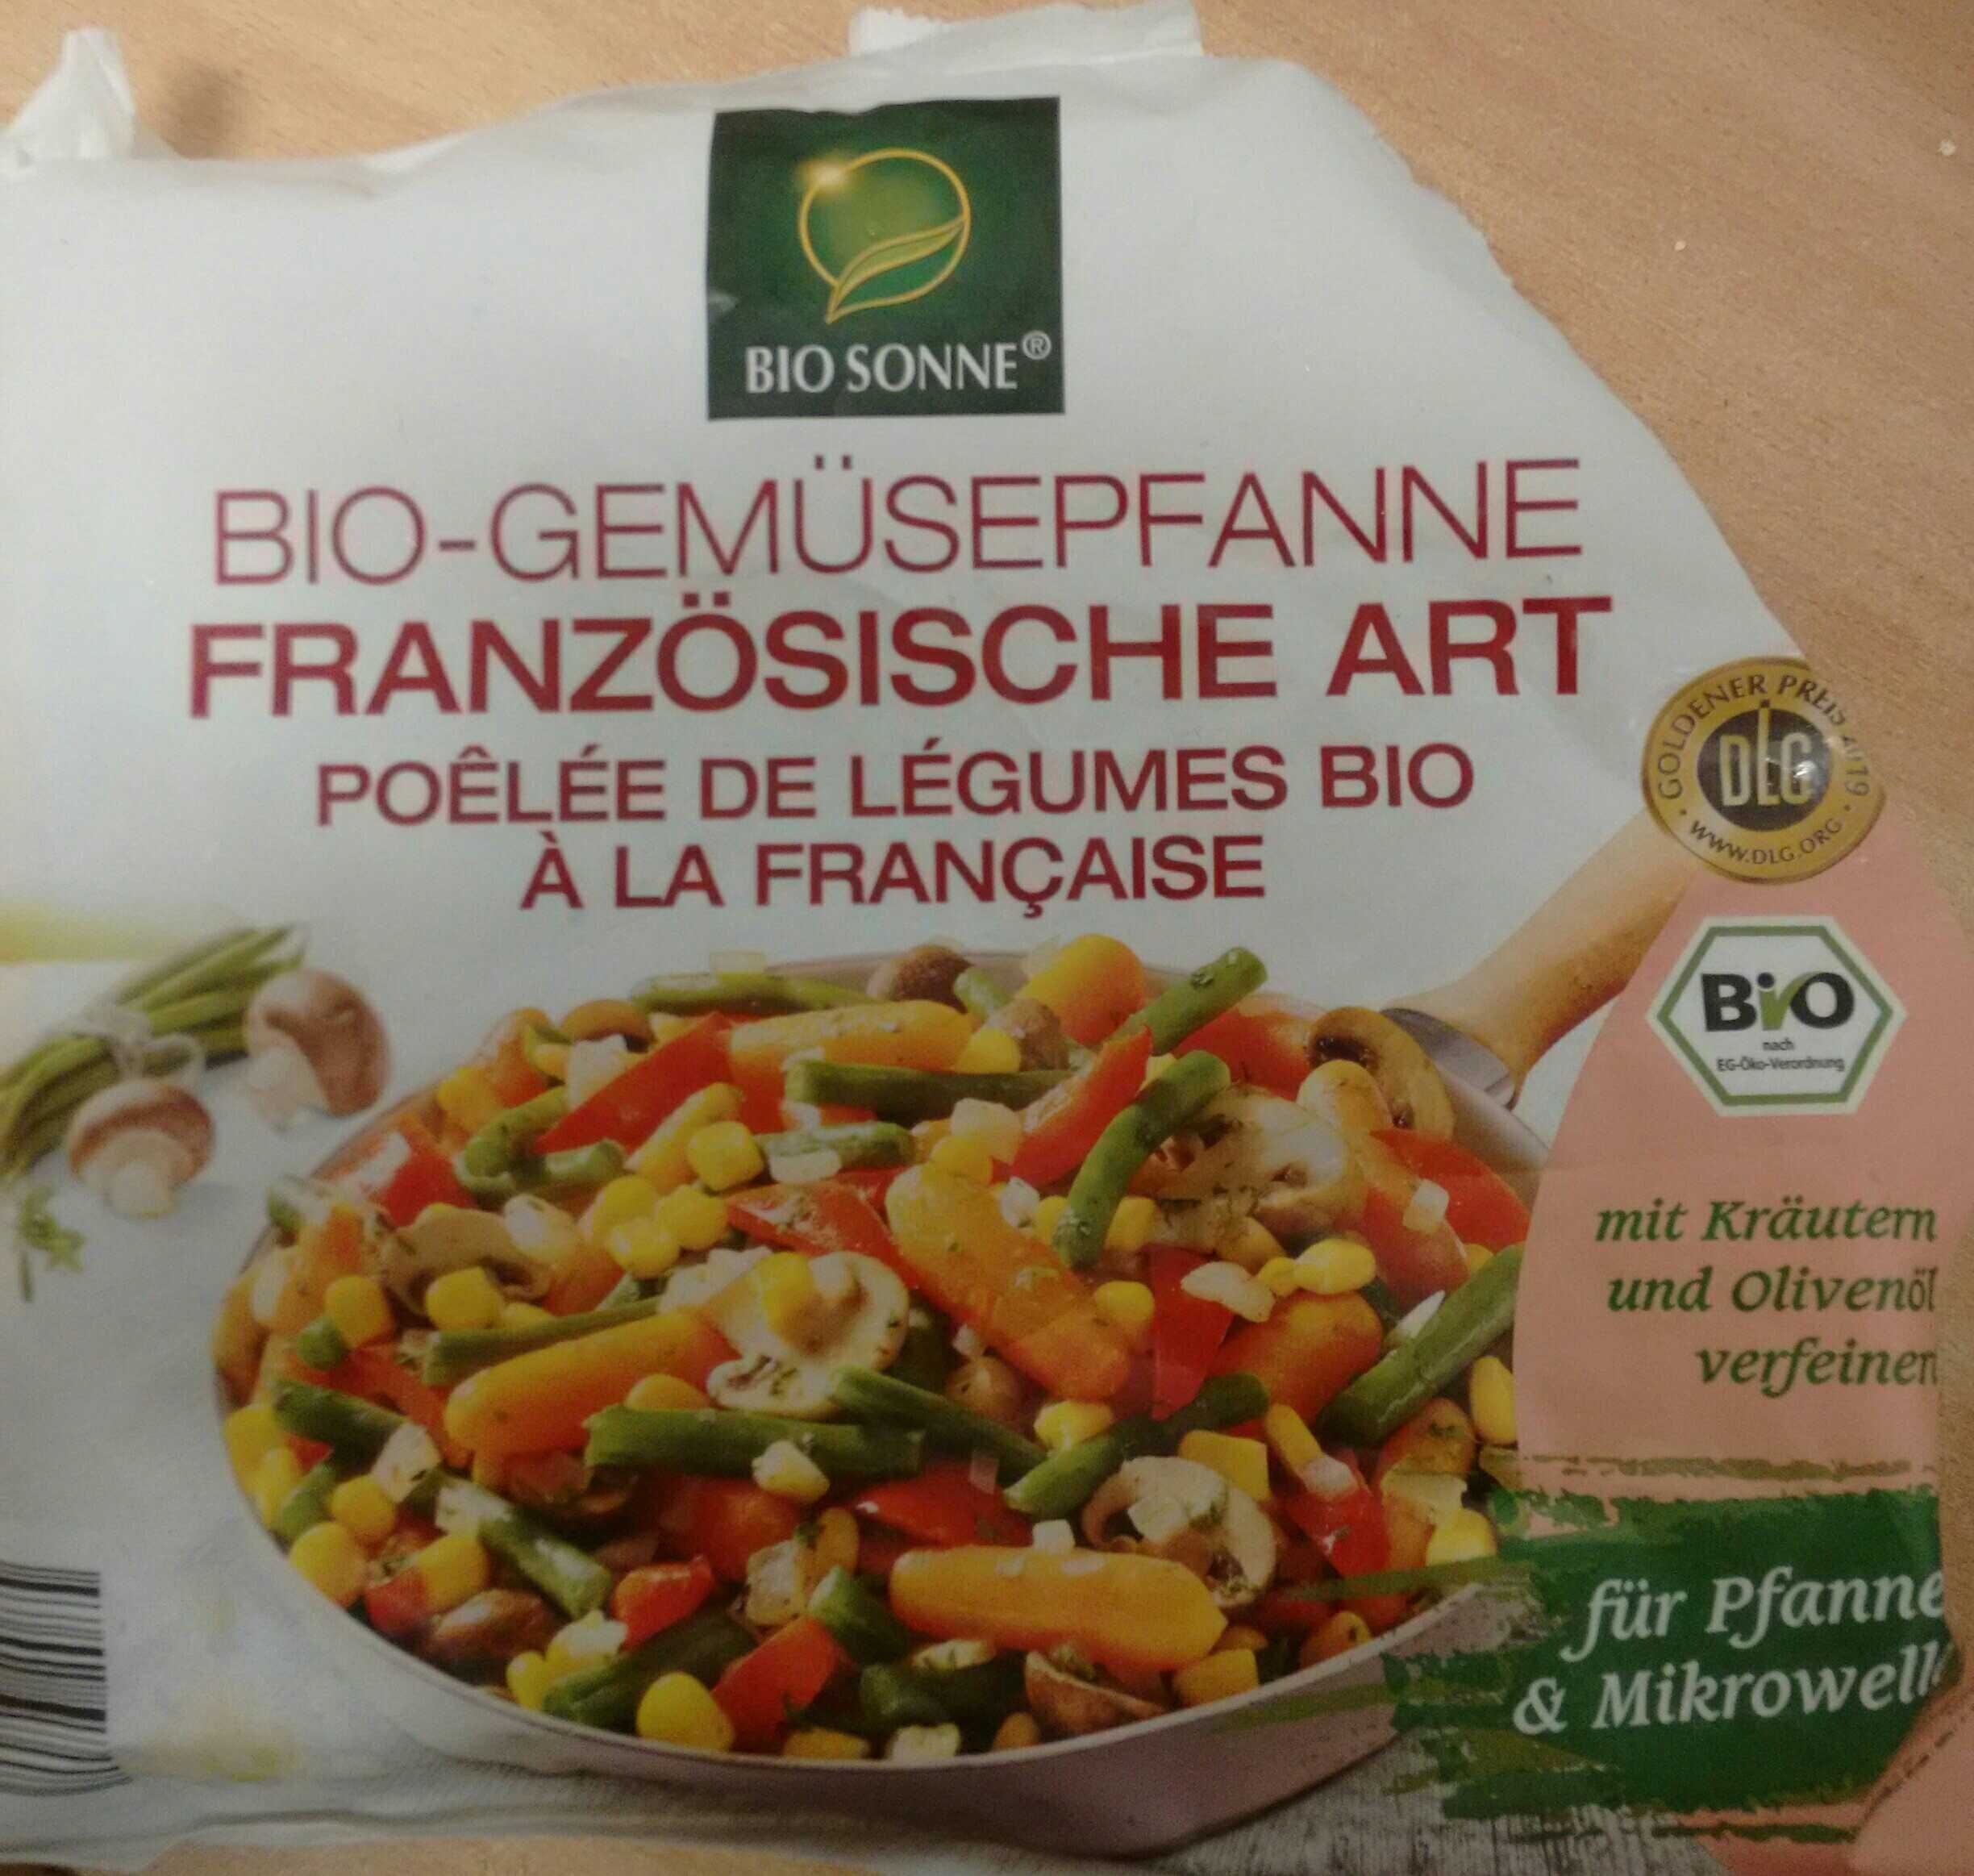 Bio-Gemüsepfanne französische Art - Produkt - en